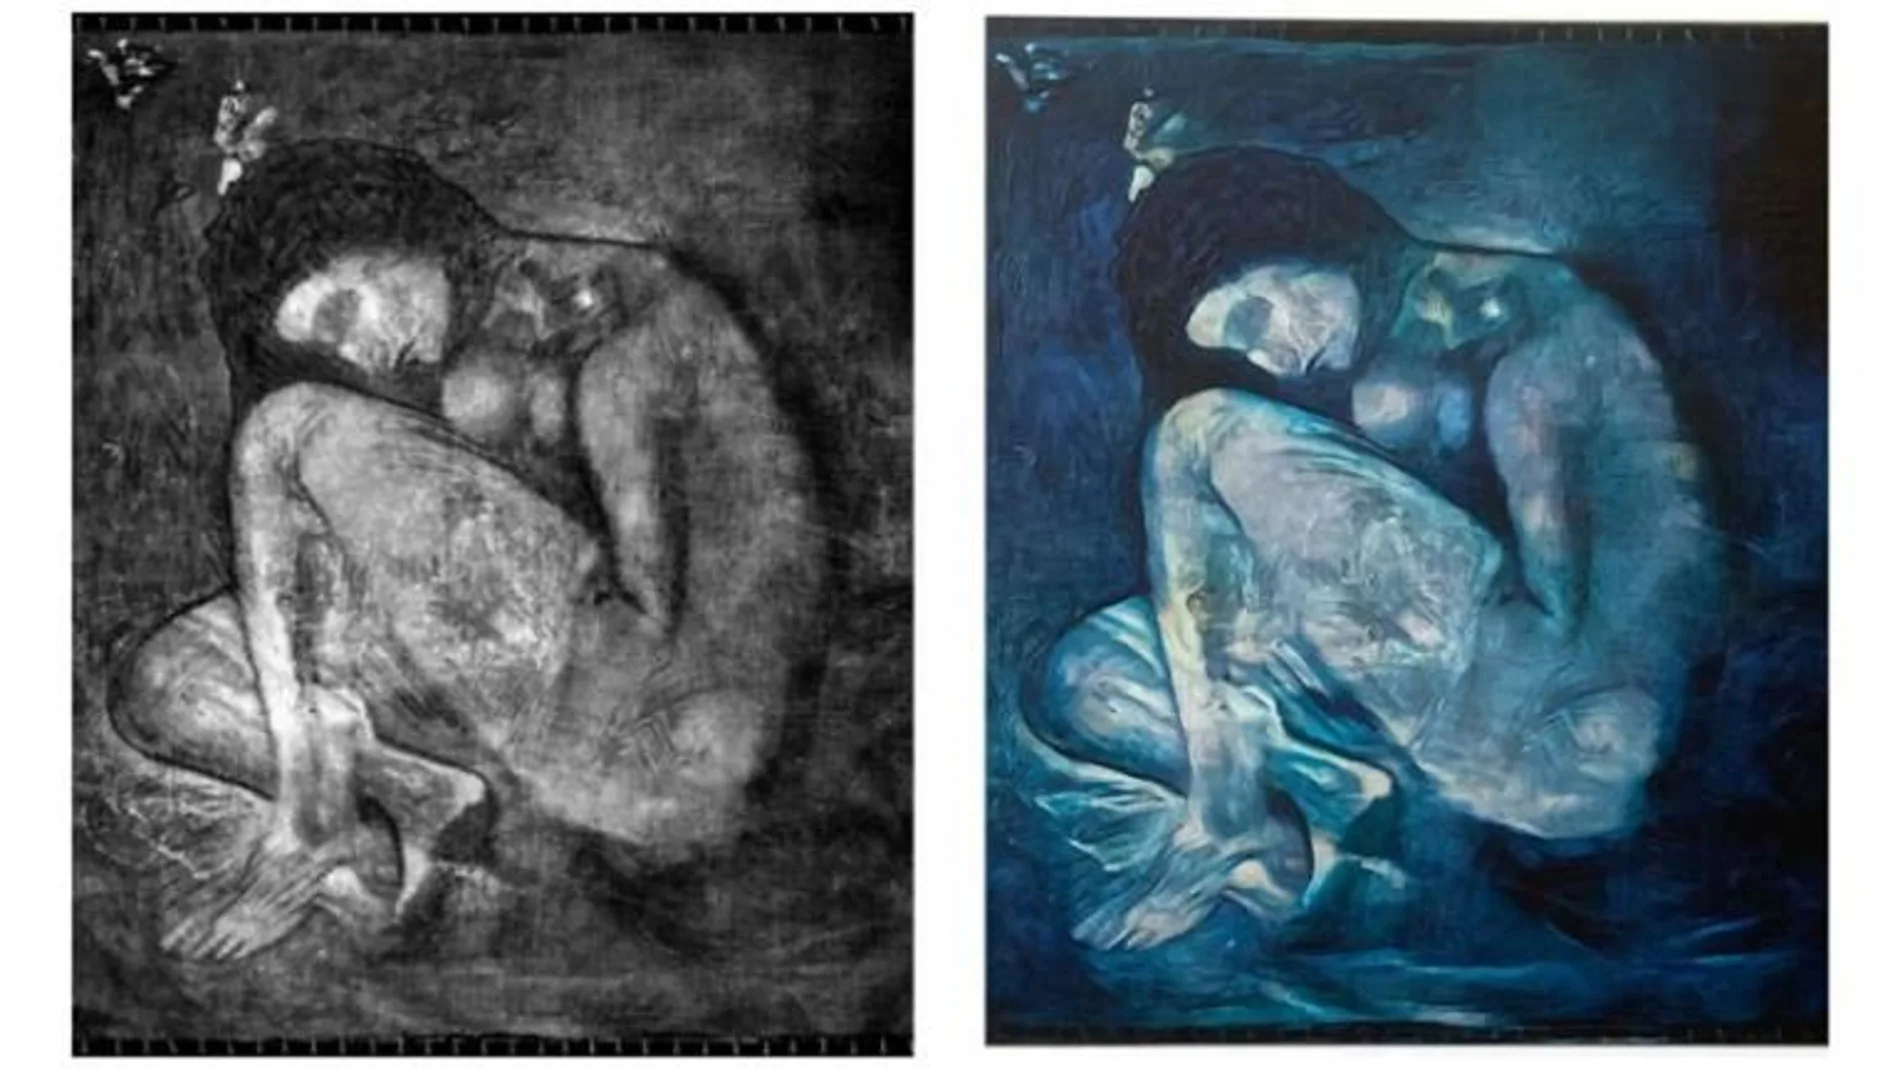 La mujer desnuda que se ha encontrado bajo la pintura de Picasso "La comida del ciego"